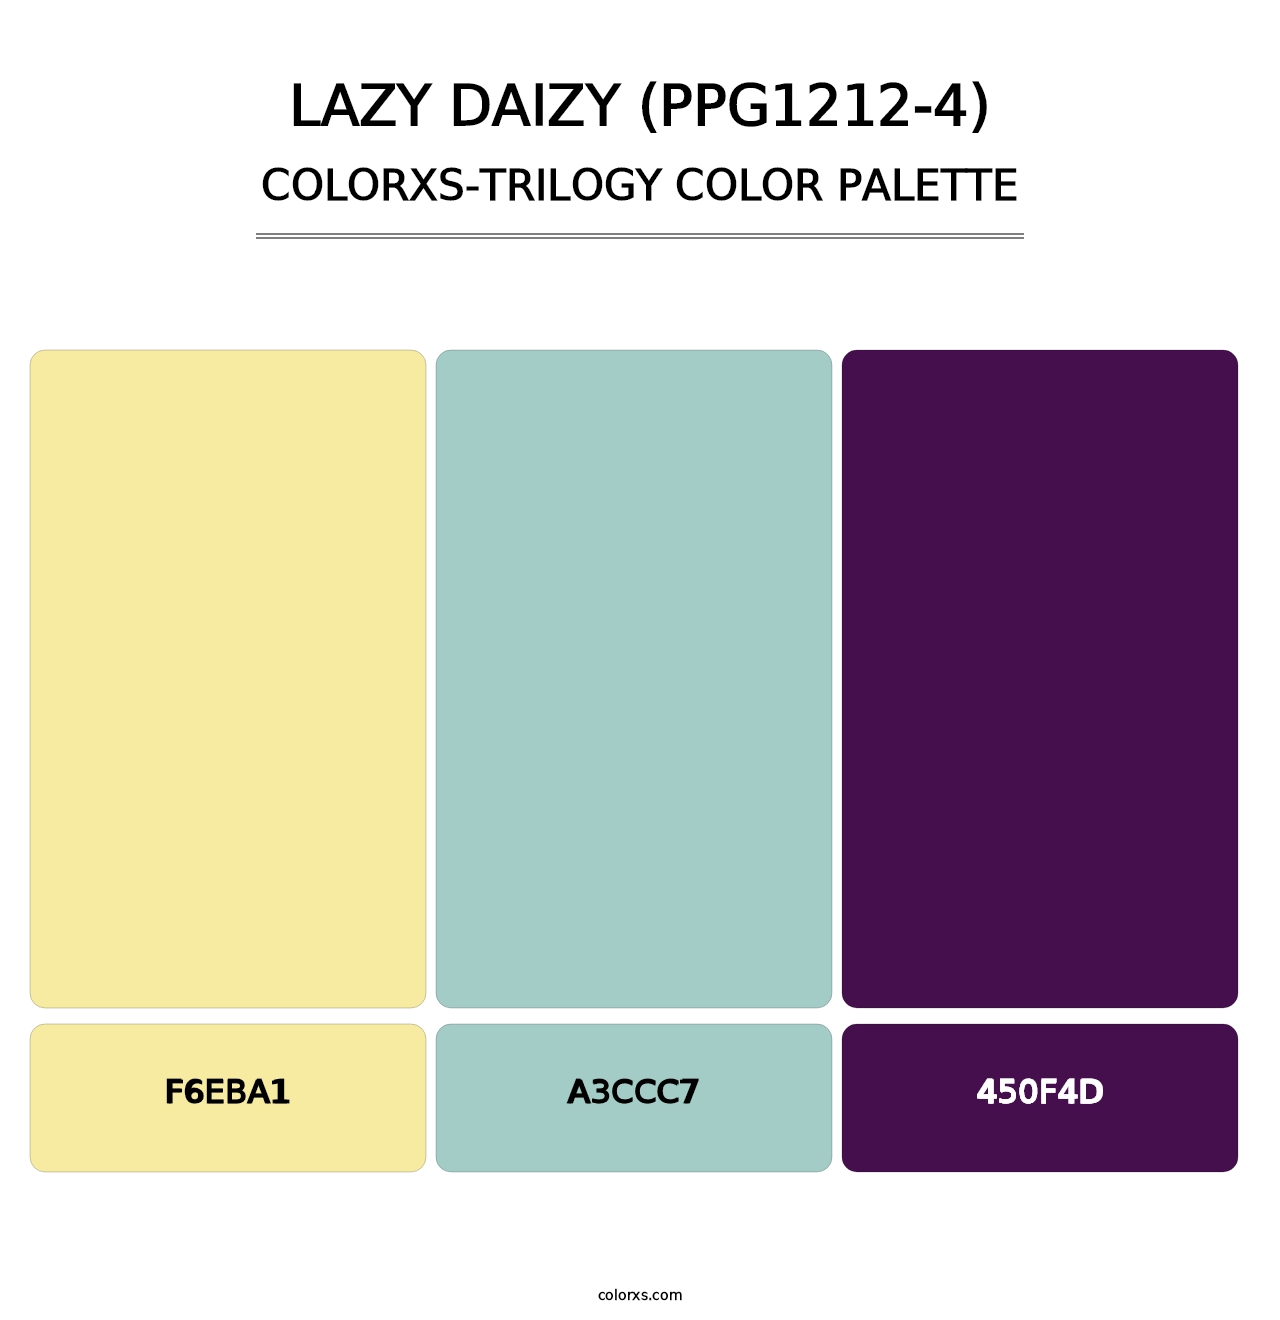 Lazy Daizy (PPG1212-4) - Colorxs Trilogy Palette